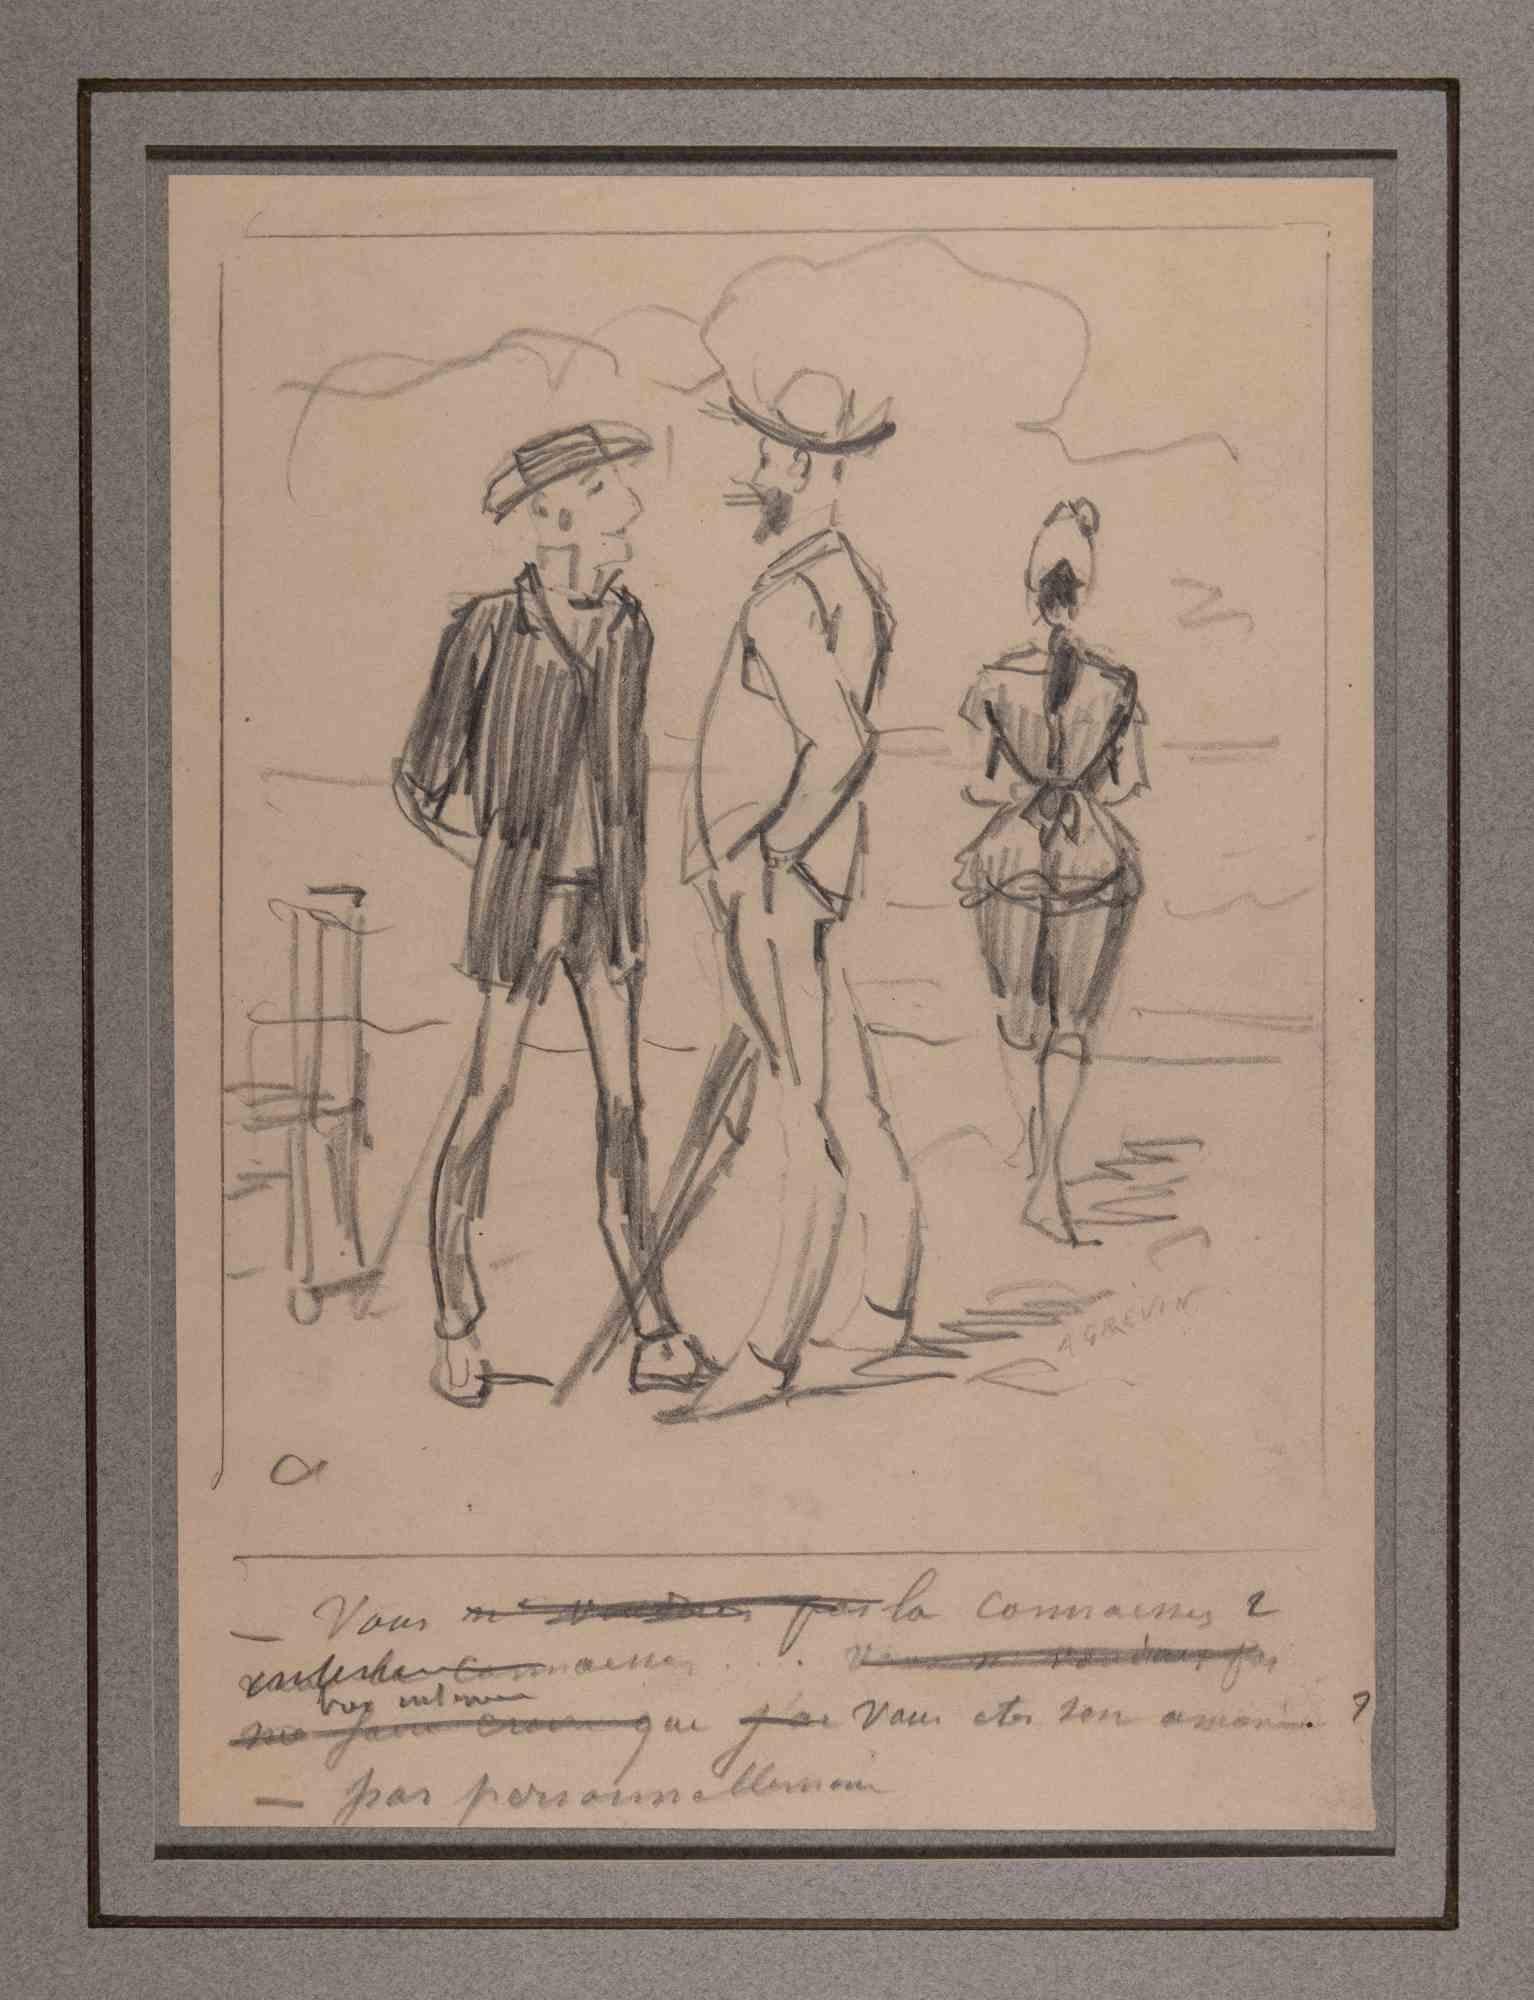 The Swimmers on the Beach - Originalzeichnung von Alfred Grvin - Ende des 19. Jahrhunderts